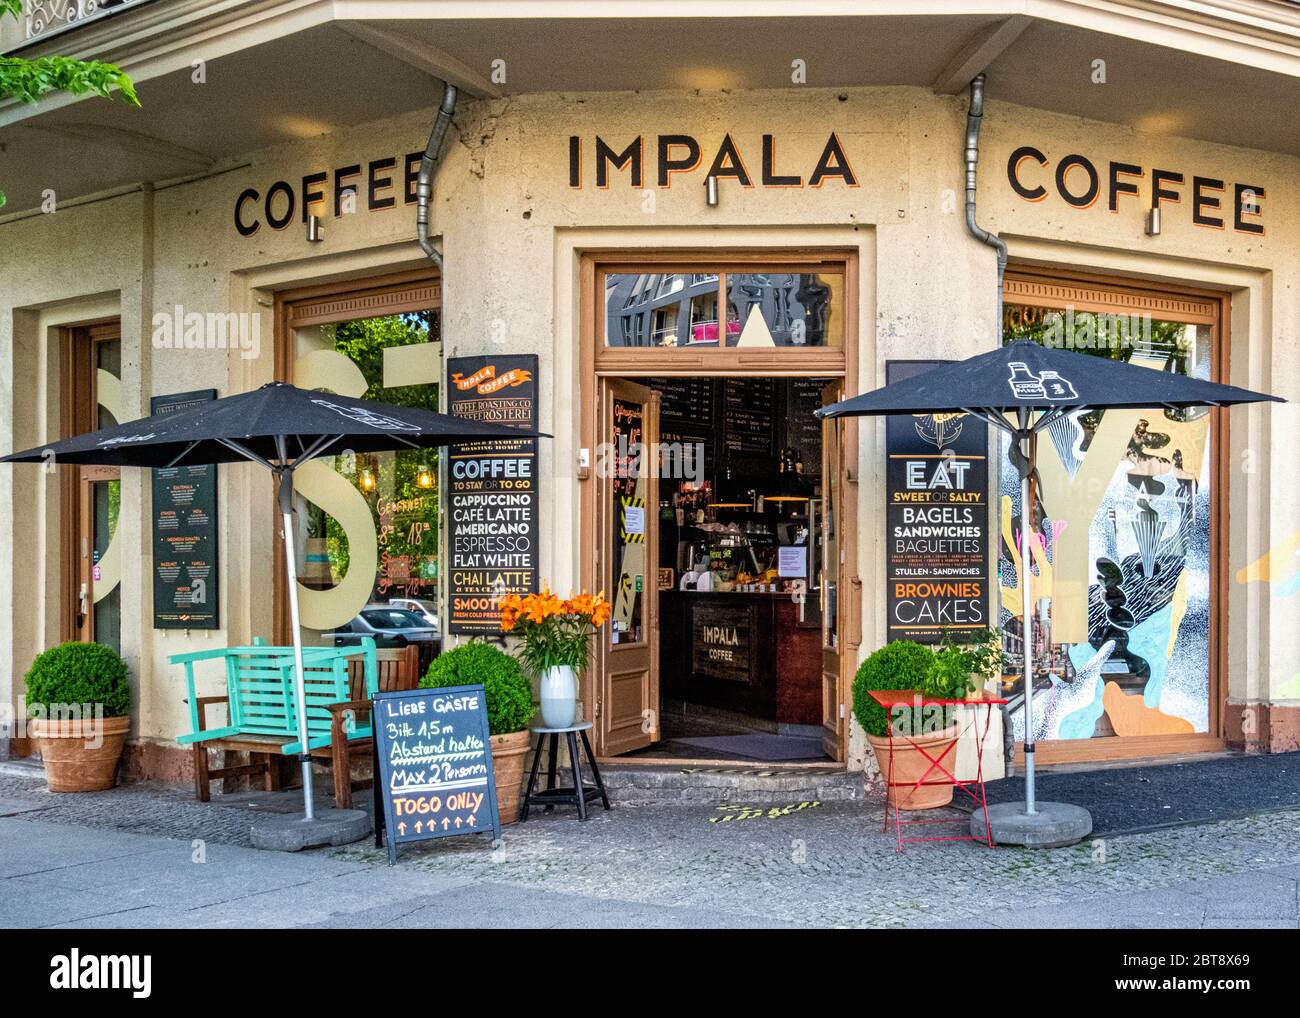 Café-restaurant Impala qui vend des articles à emporter pendant la pandémie COVID-19, Prenzlauer berg, Berlin Banque D'Images